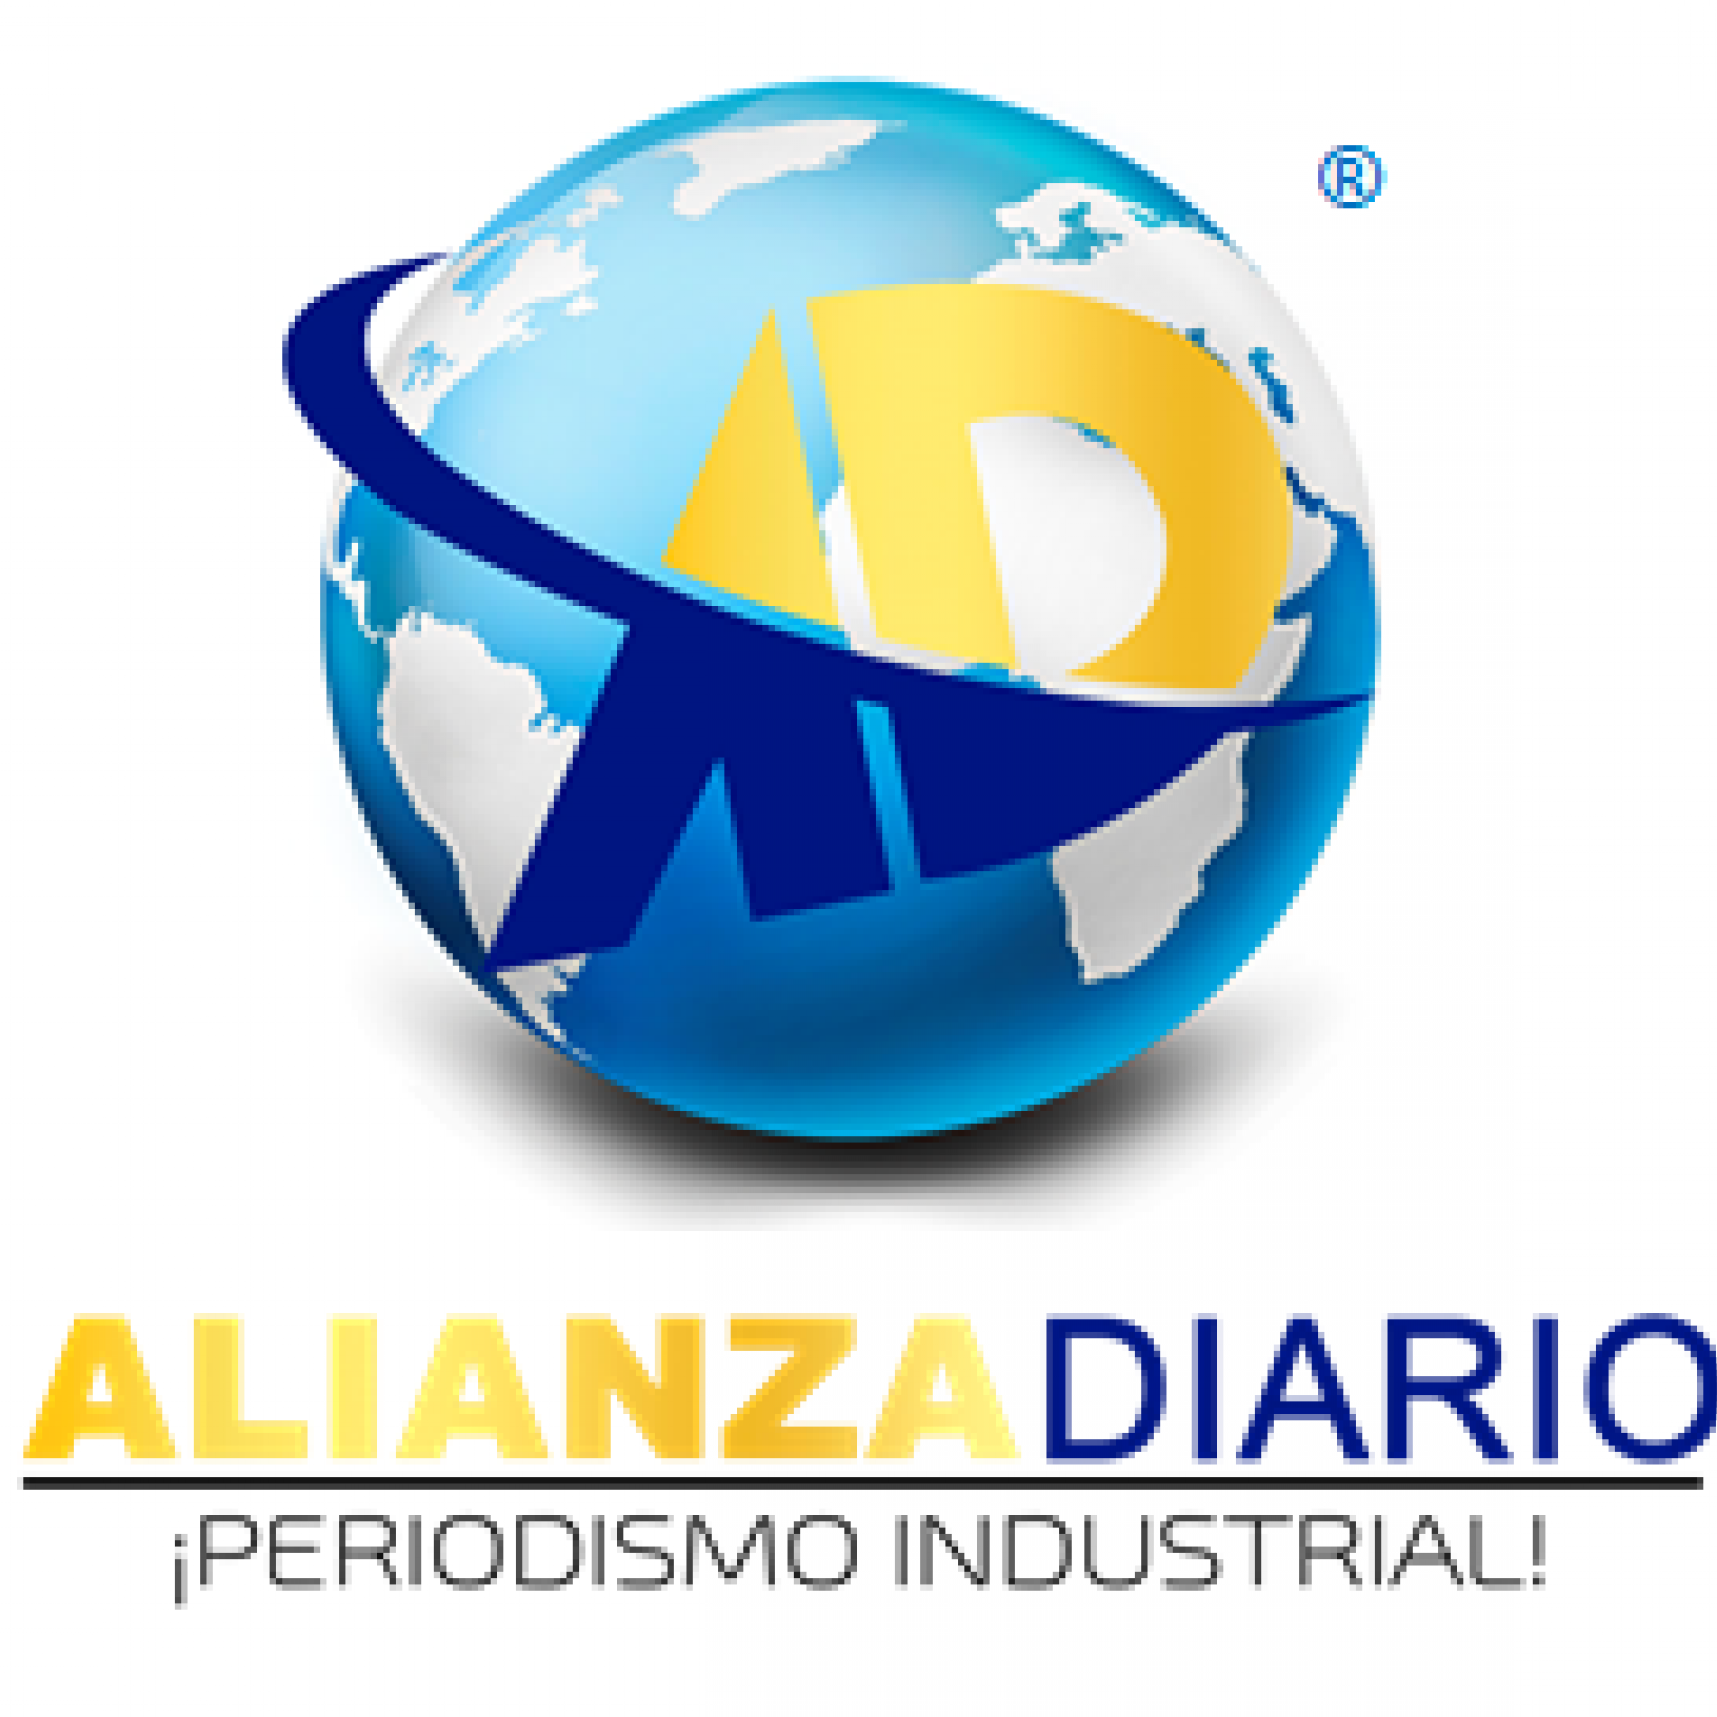 Alianza Diario